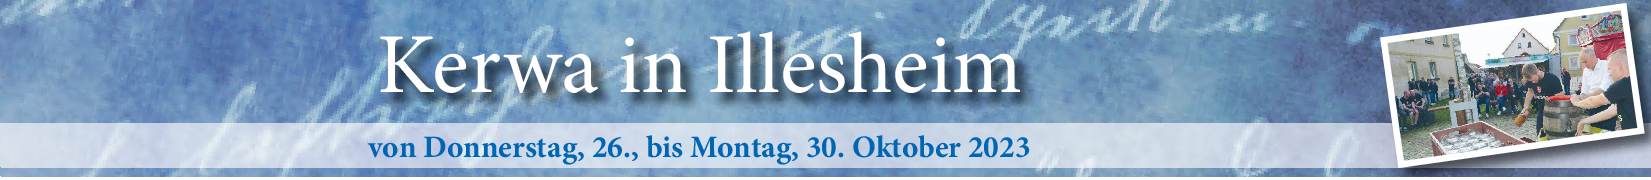 Kerwa in Illesheim vom 26. bis 30. Oktober: „Auf geht's zur Illesheimer Kerwa“